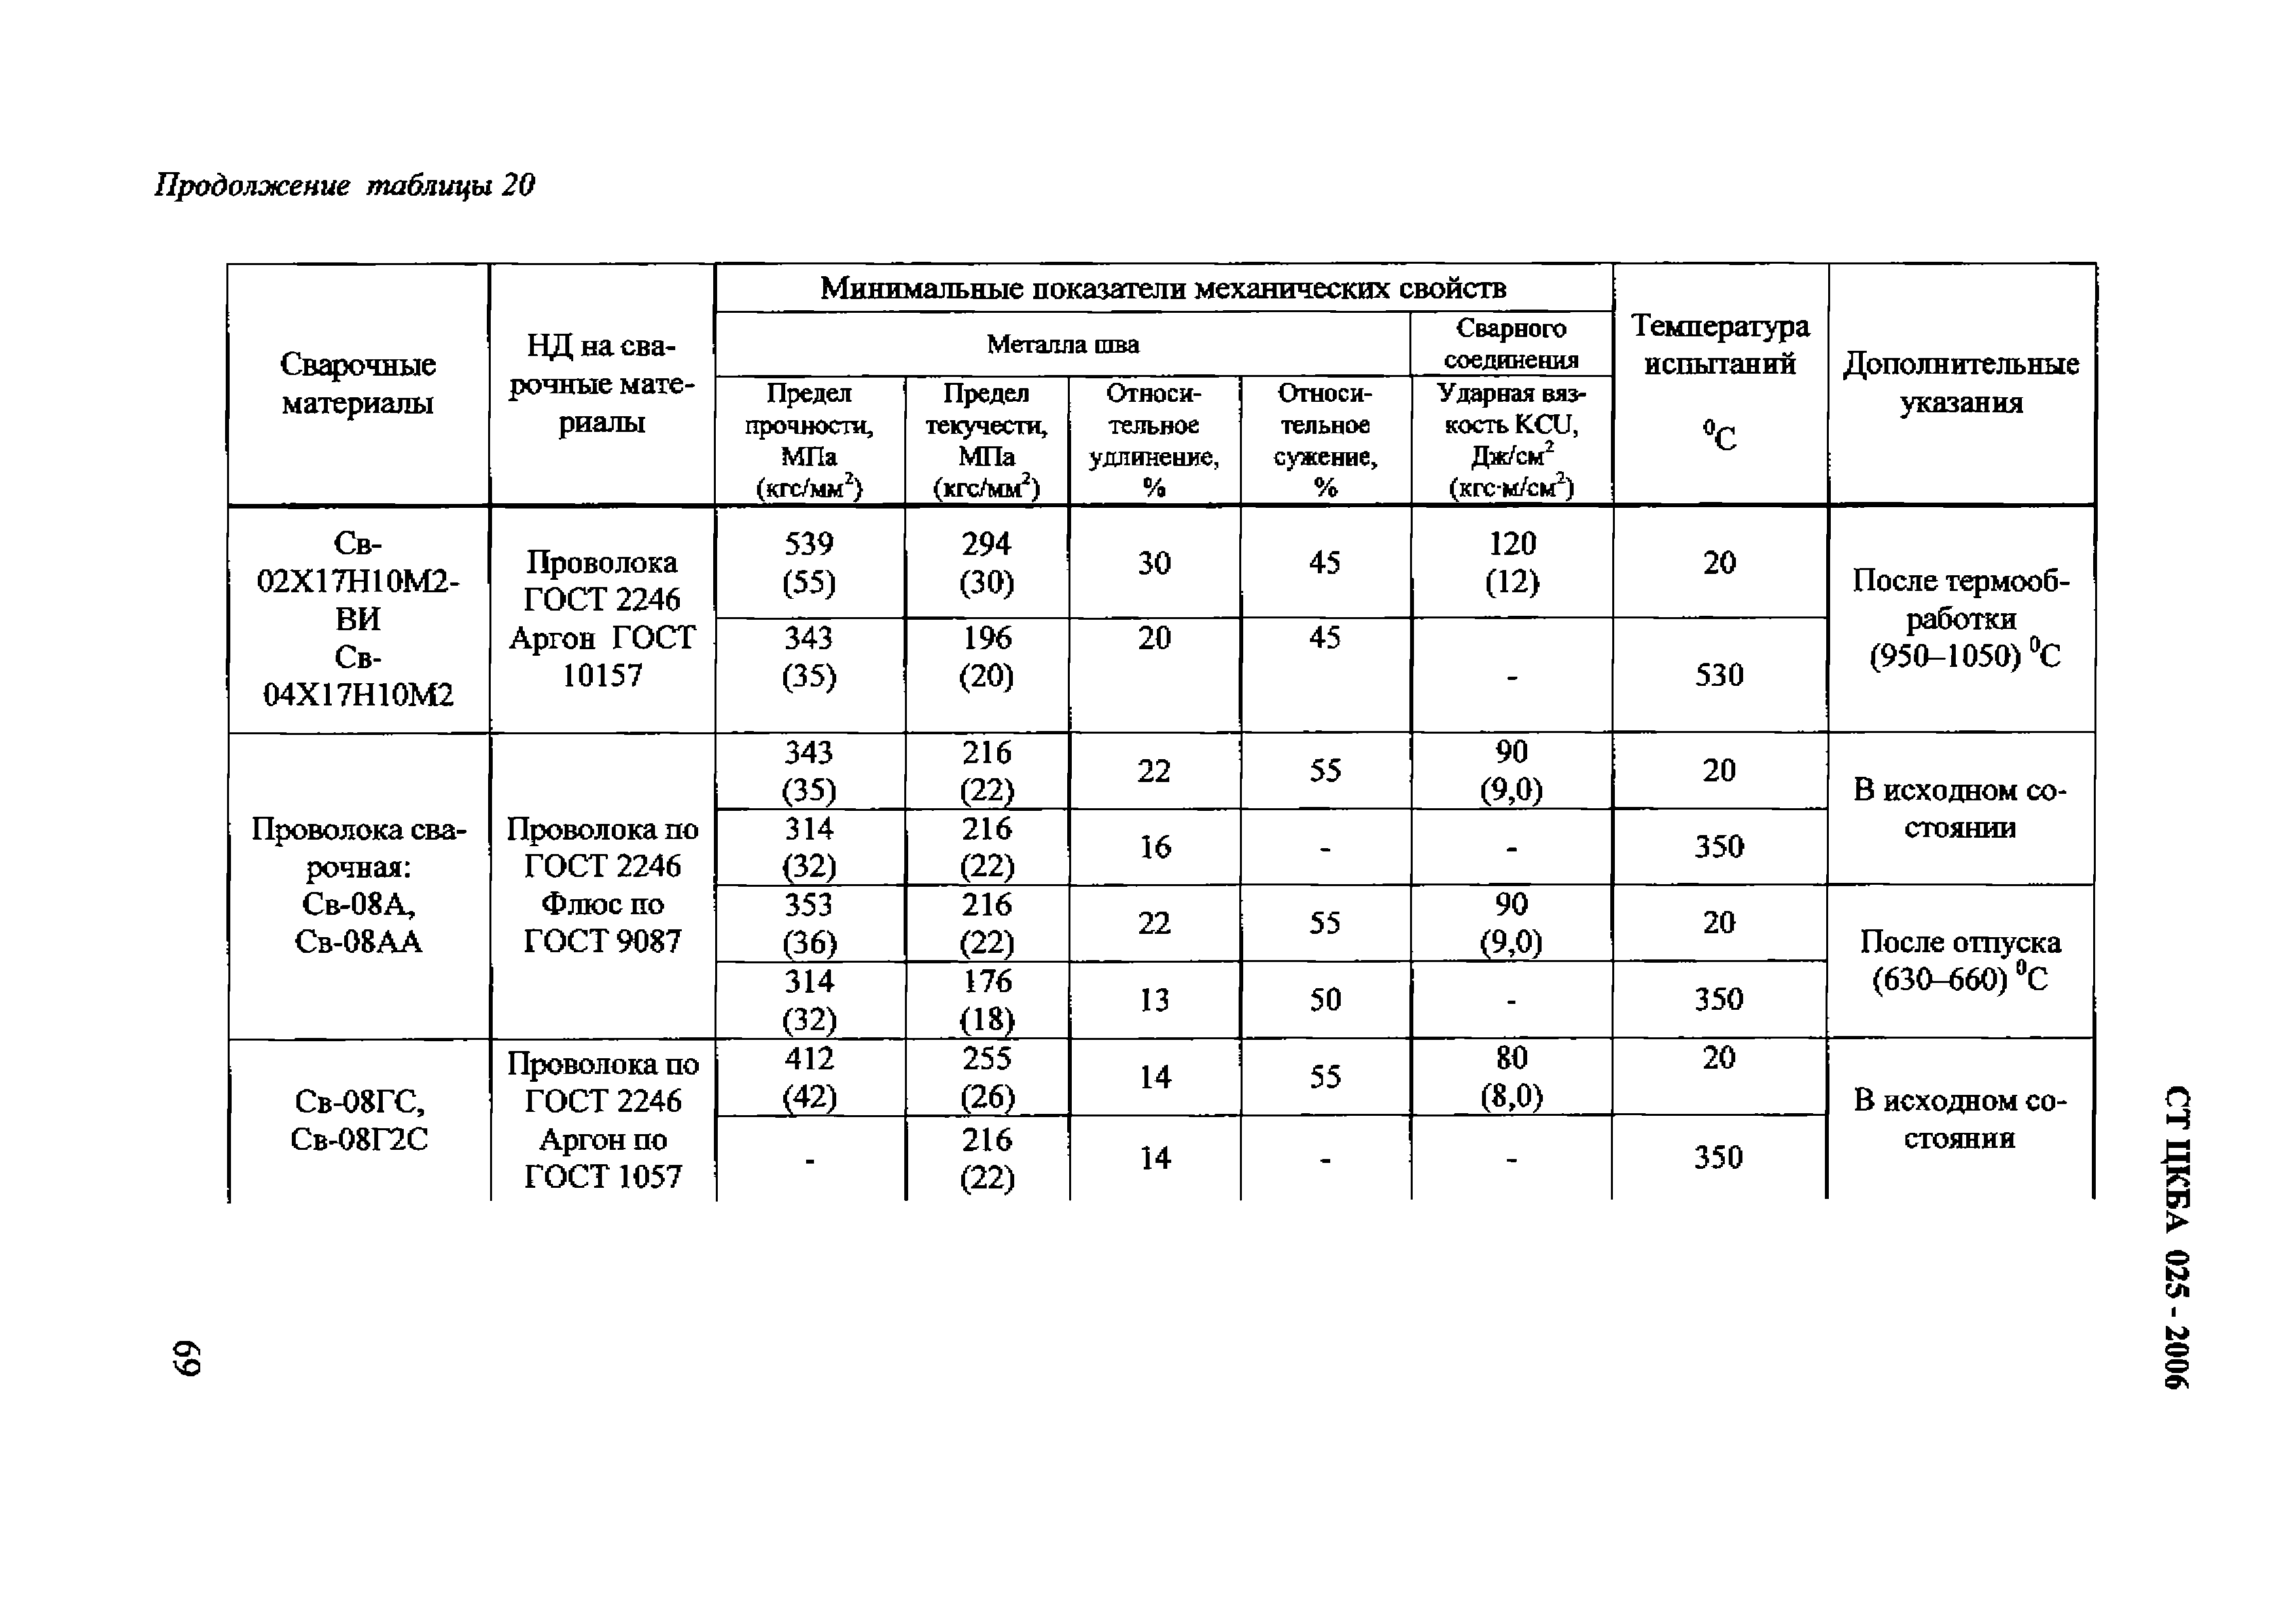 Показатели механических свойств. Таблица контроля качества сварных соединений тб2. Контроль качества сварного шва ТБ 2. Тб1 и тб2 таблица контроля. Ст ЦКБА 025-2006.